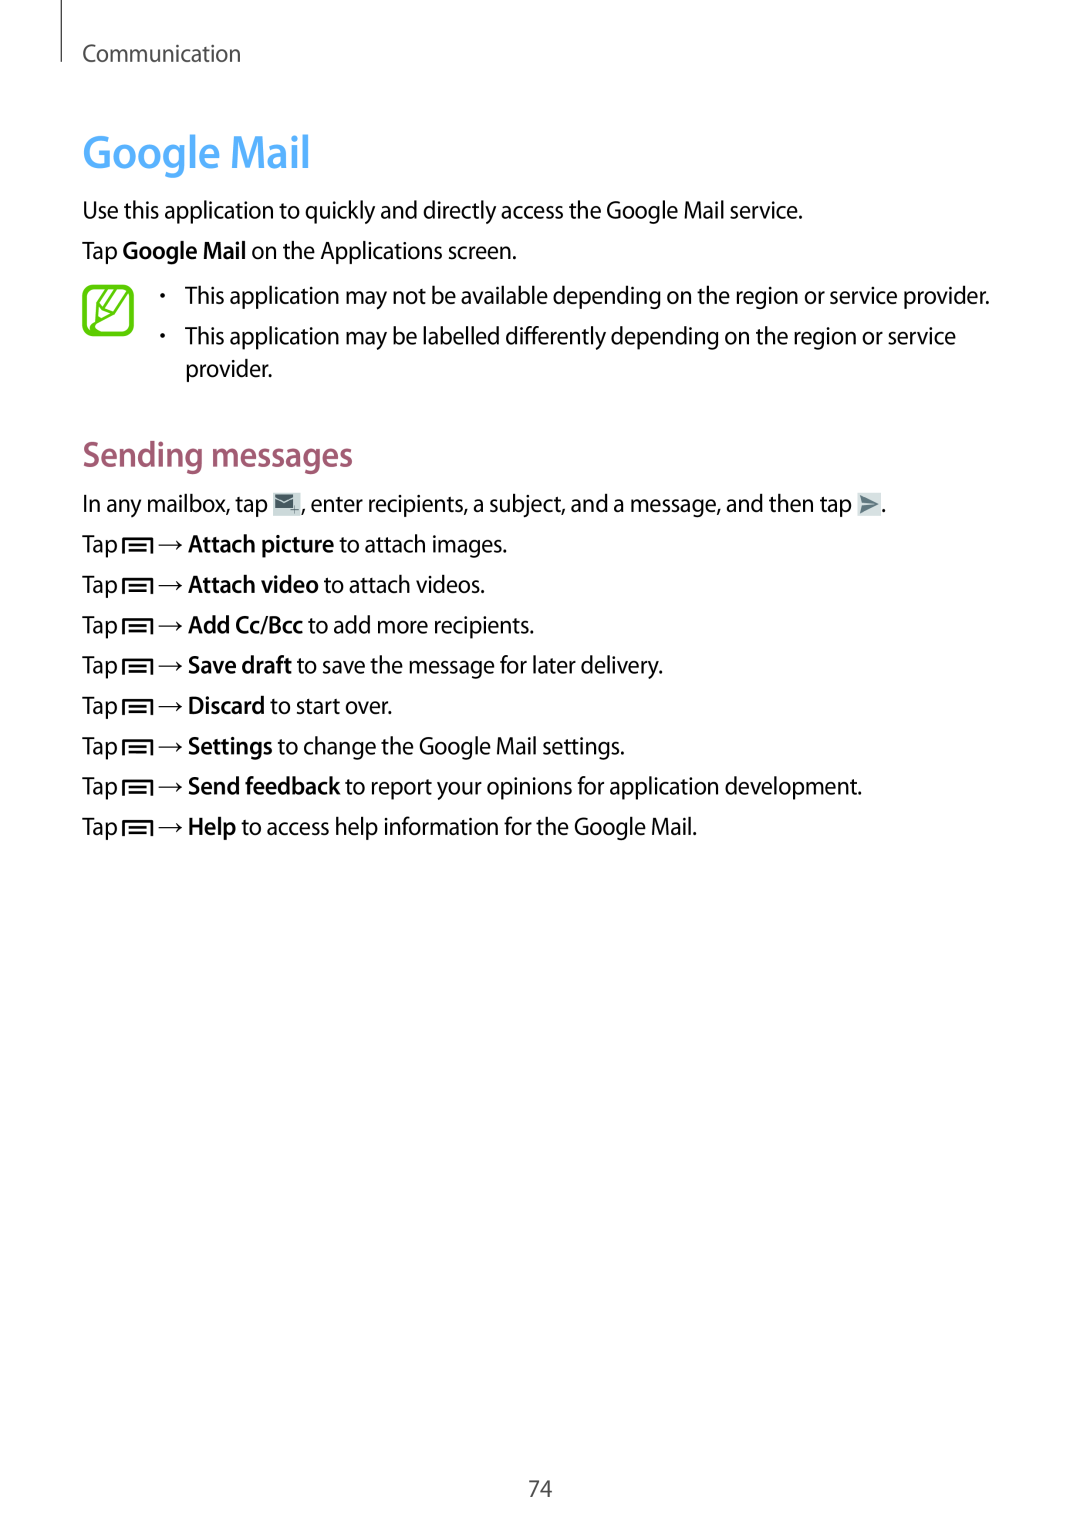 Samsung SM-N9005ZKEAFR, SM-N9005ZKEEGY, SM-N9005ZIEEGY, SM-N9005ZIEKSA manual Google Mail, Sending messages, Communication 